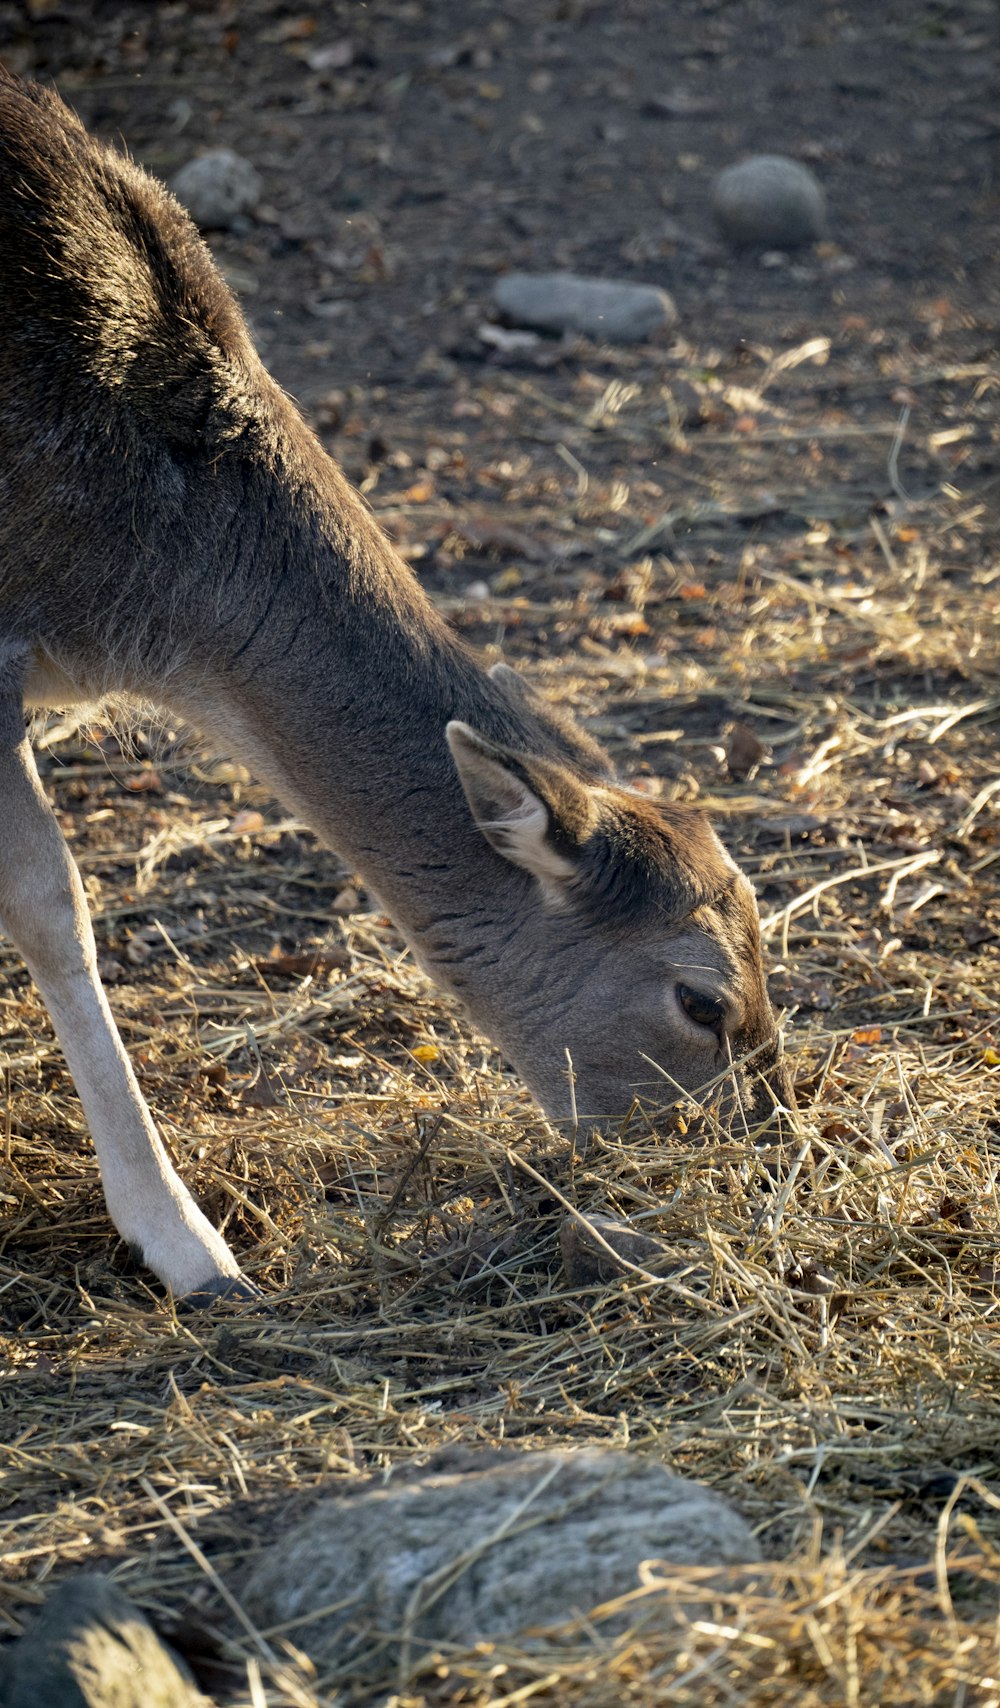 a kangaroo eating grass